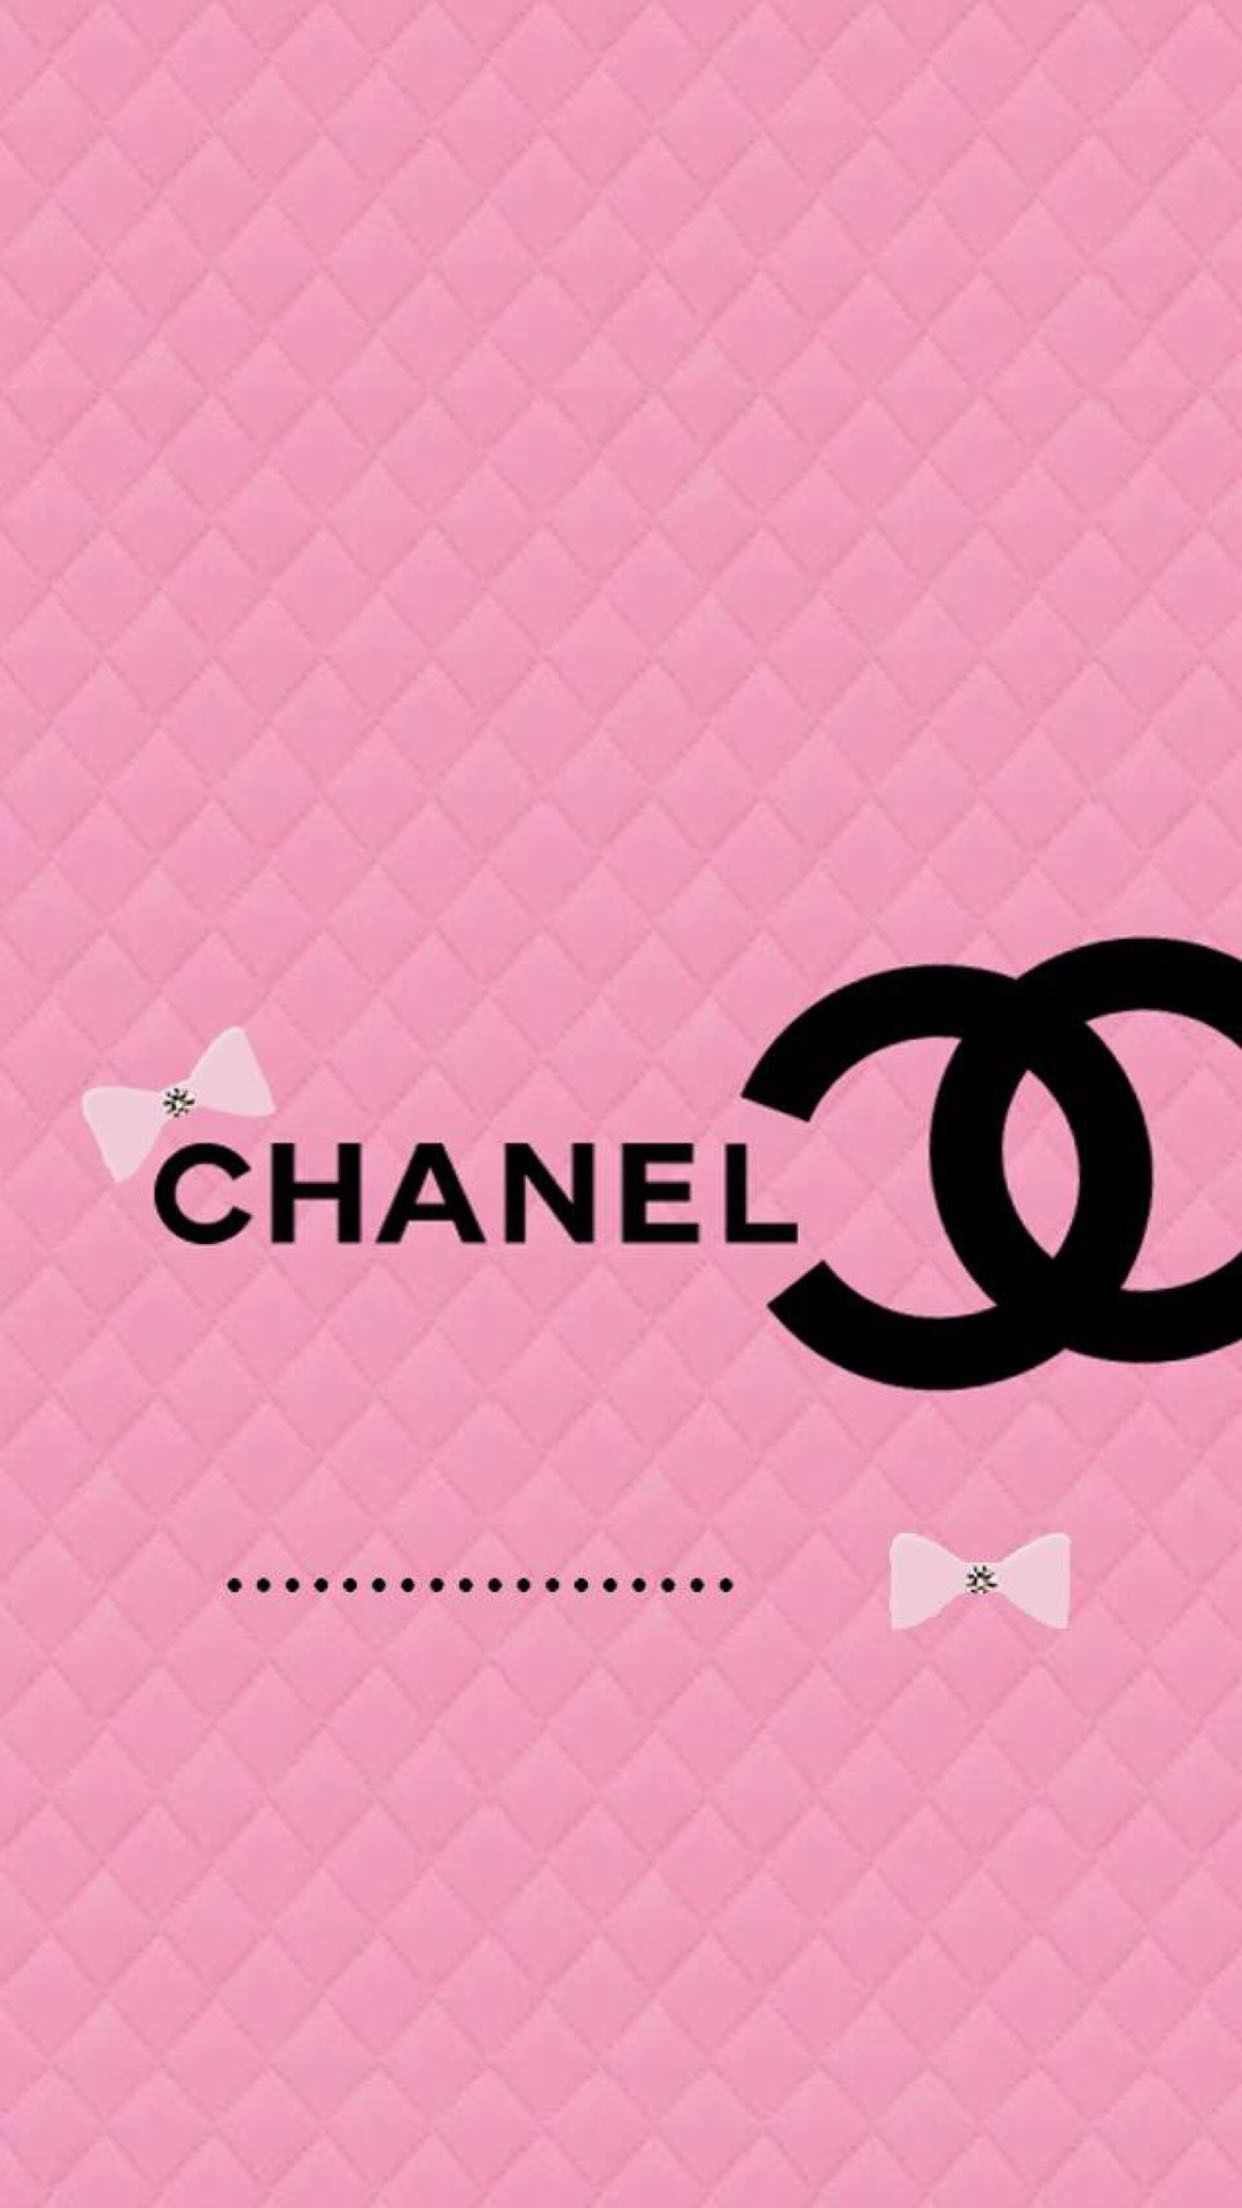 Download wallpapers Chanel carbon logo 4k grunge art carbon background  creative Chanel black logo brands Chanel logo Chanel for desktop free  Pictures for desktop free